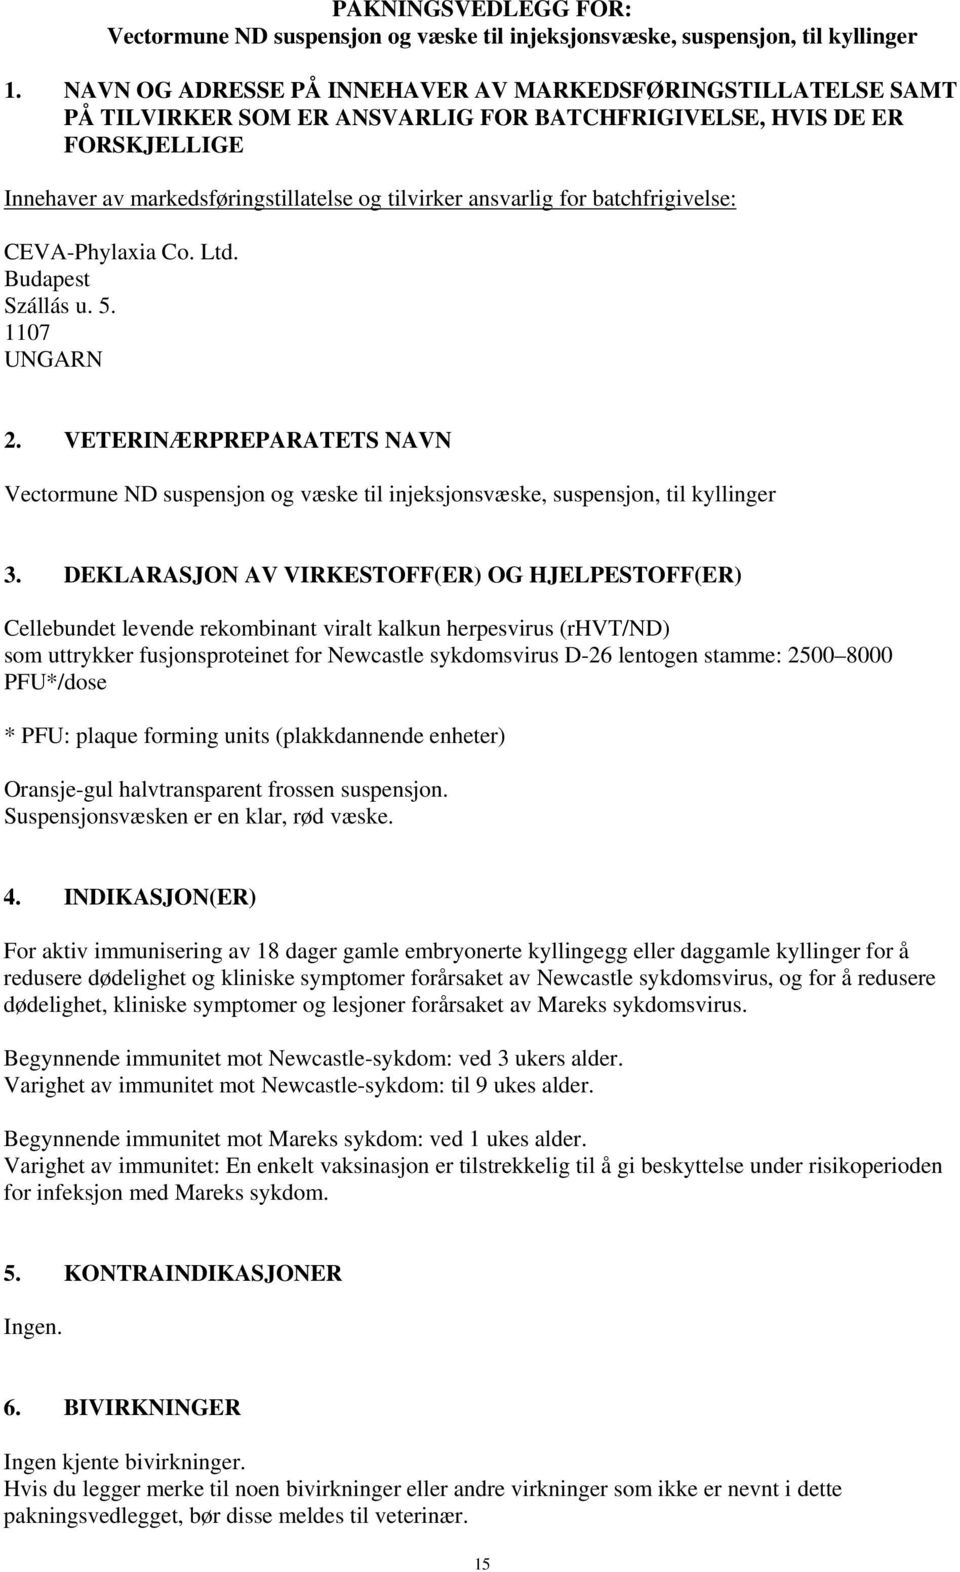 for batchfrigivelse: CEVA-Phylaxia Co. Ltd. Budapest Szállás u. 5. 1107 UNGARN 2. VETERINÆRPREPARATETS NAVN Vectormune ND suspensjon og væske til injeksjonsvæske, suspensjon, til kyllinger 3.